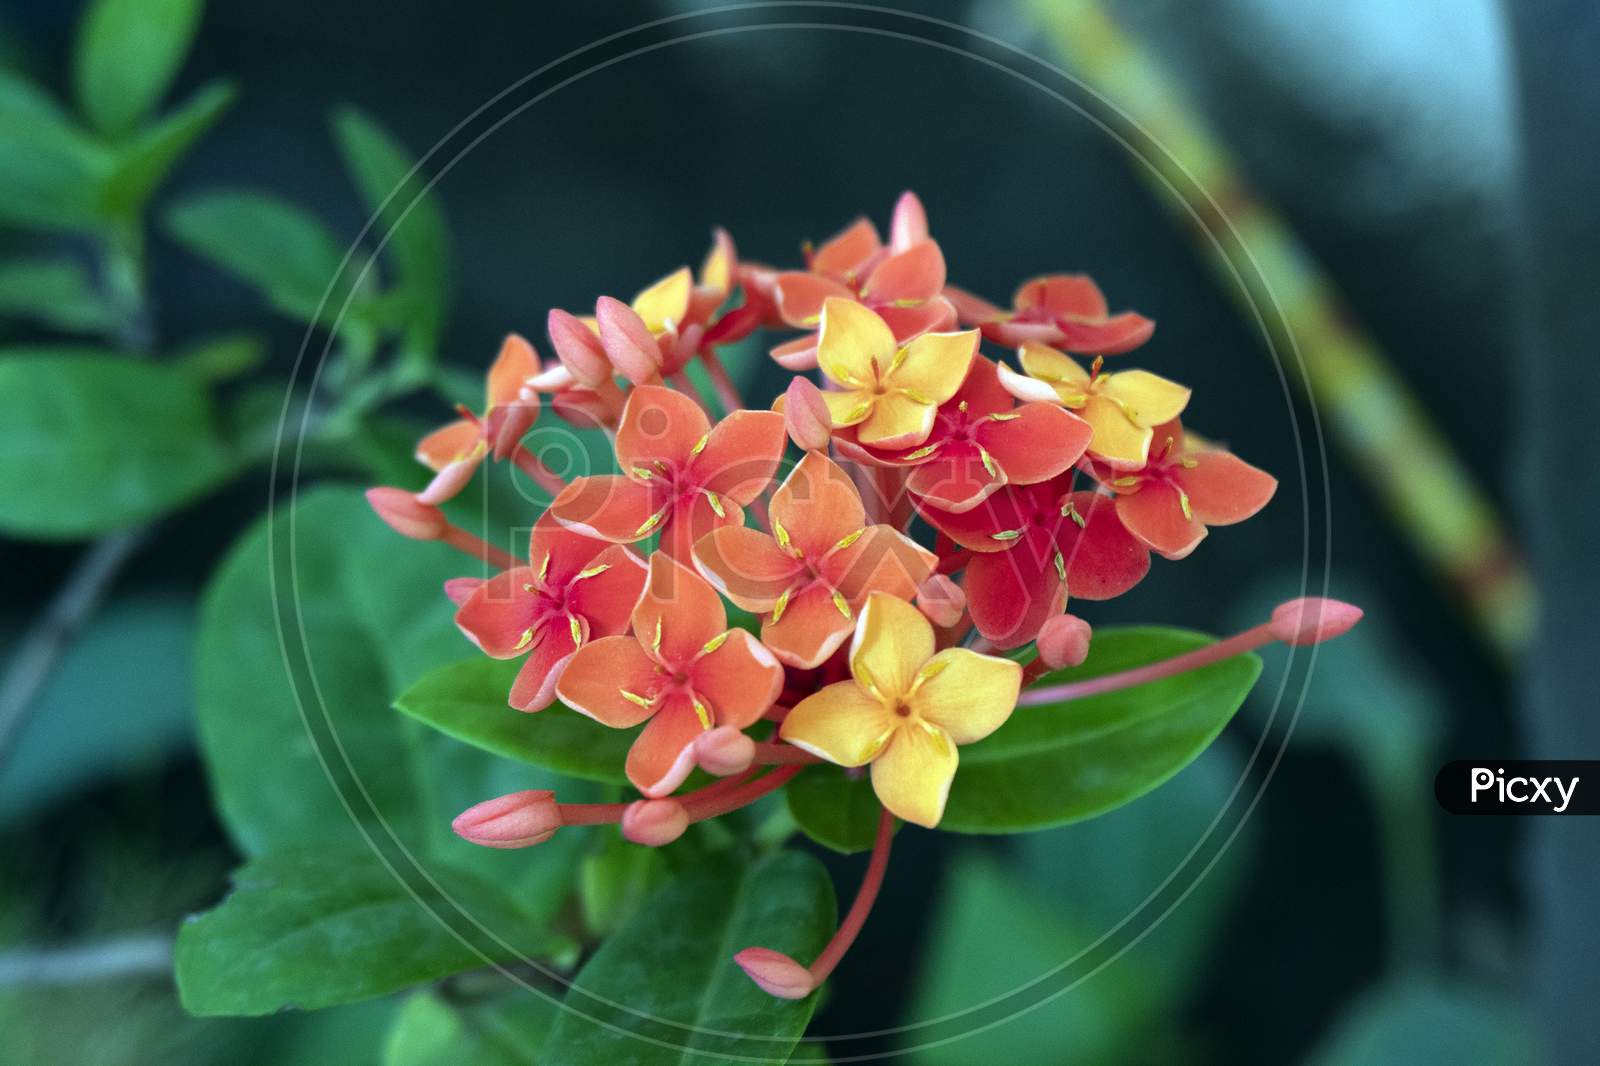 Ixora coccinea red Jungle geranium flower with buds